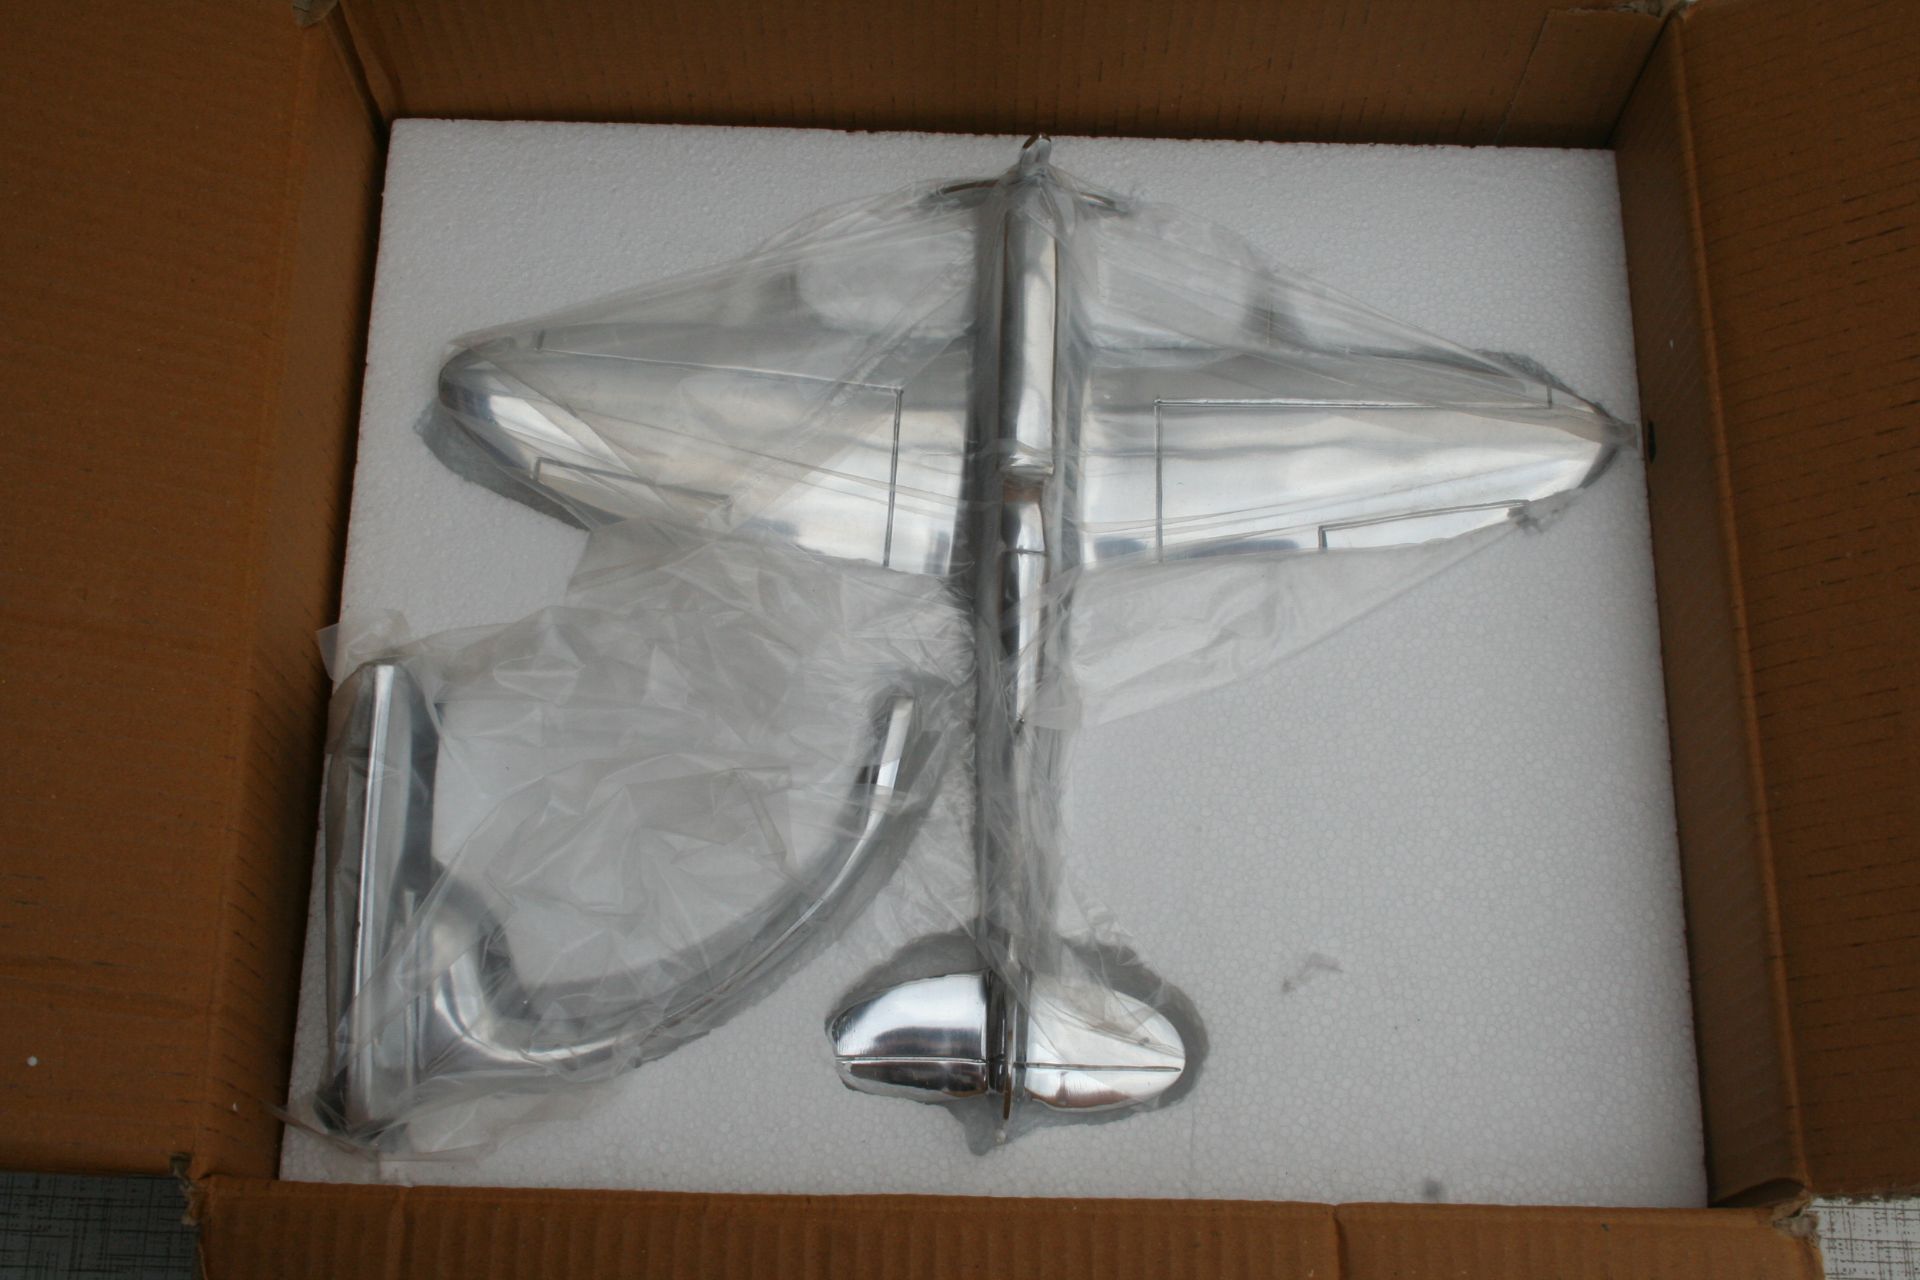 Aluminium spitfire model